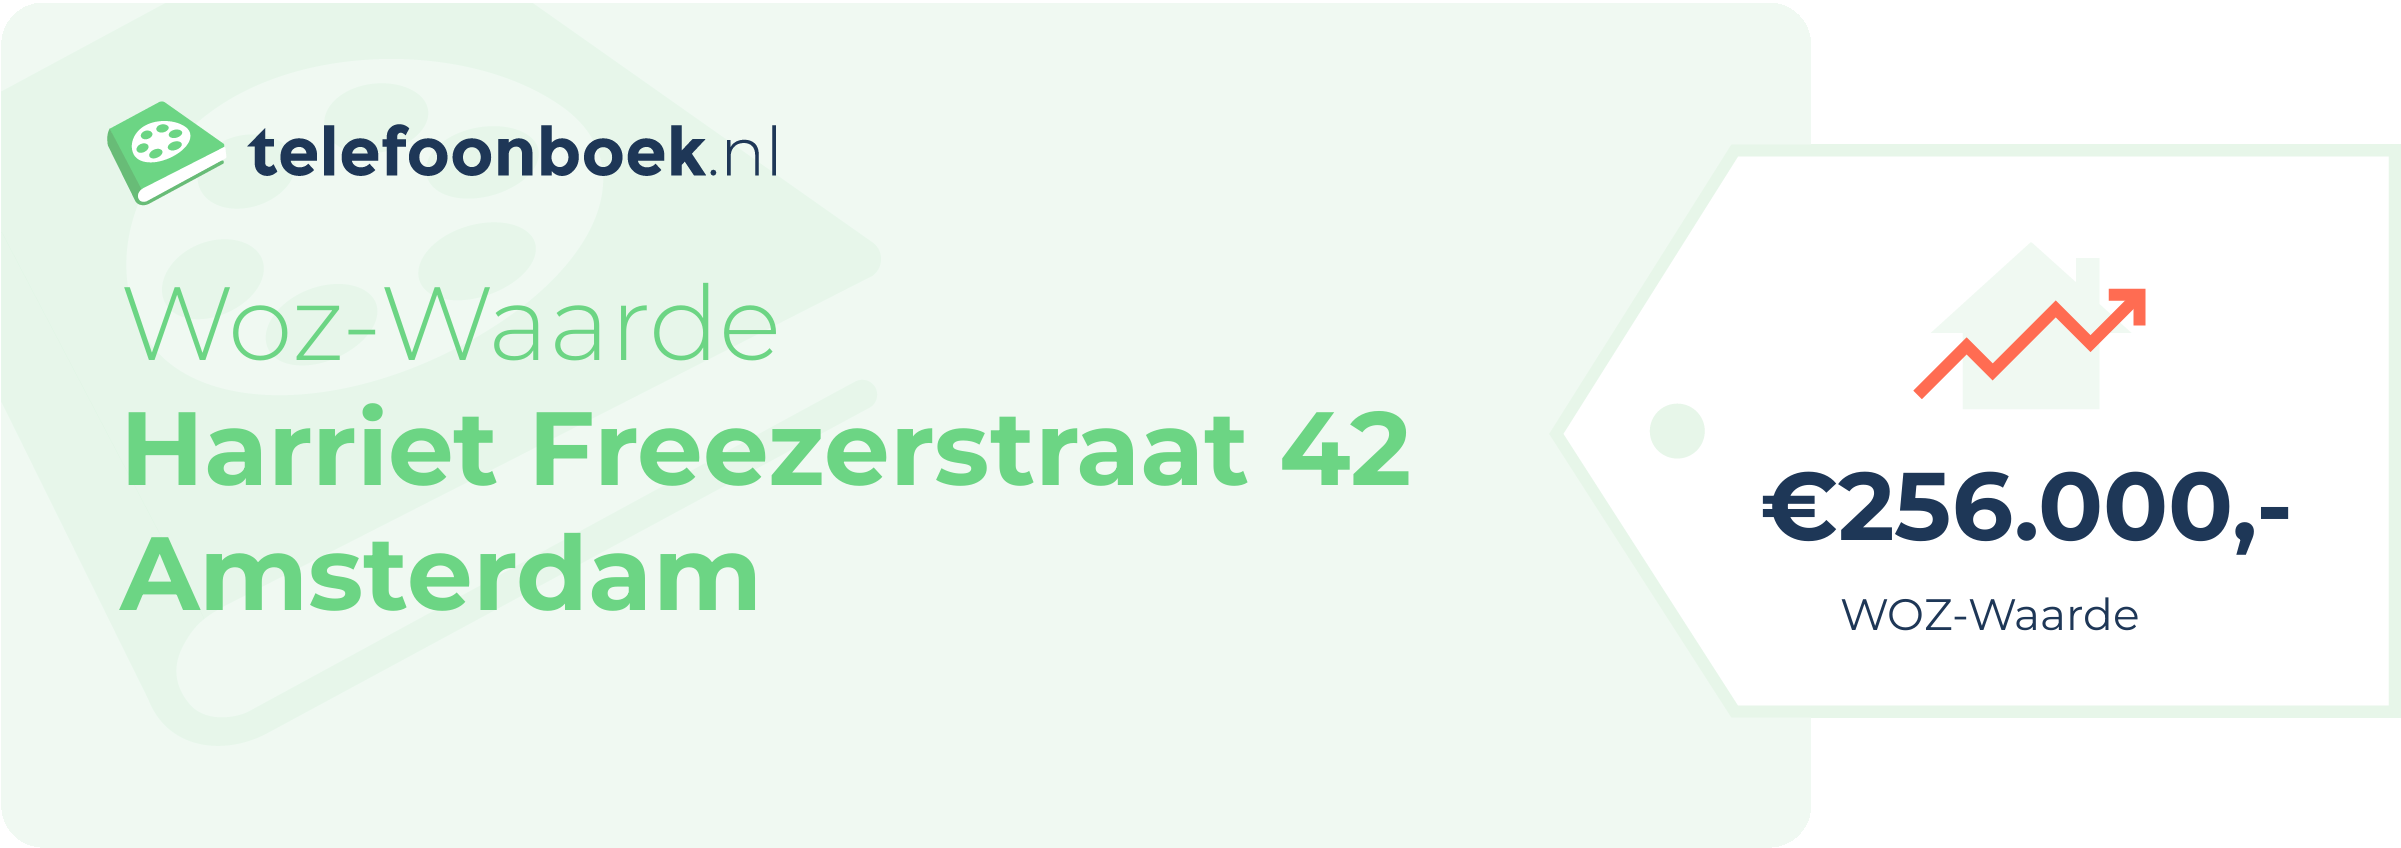 WOZ-waarde Harriet Freezerstraat 42 Amsterdam